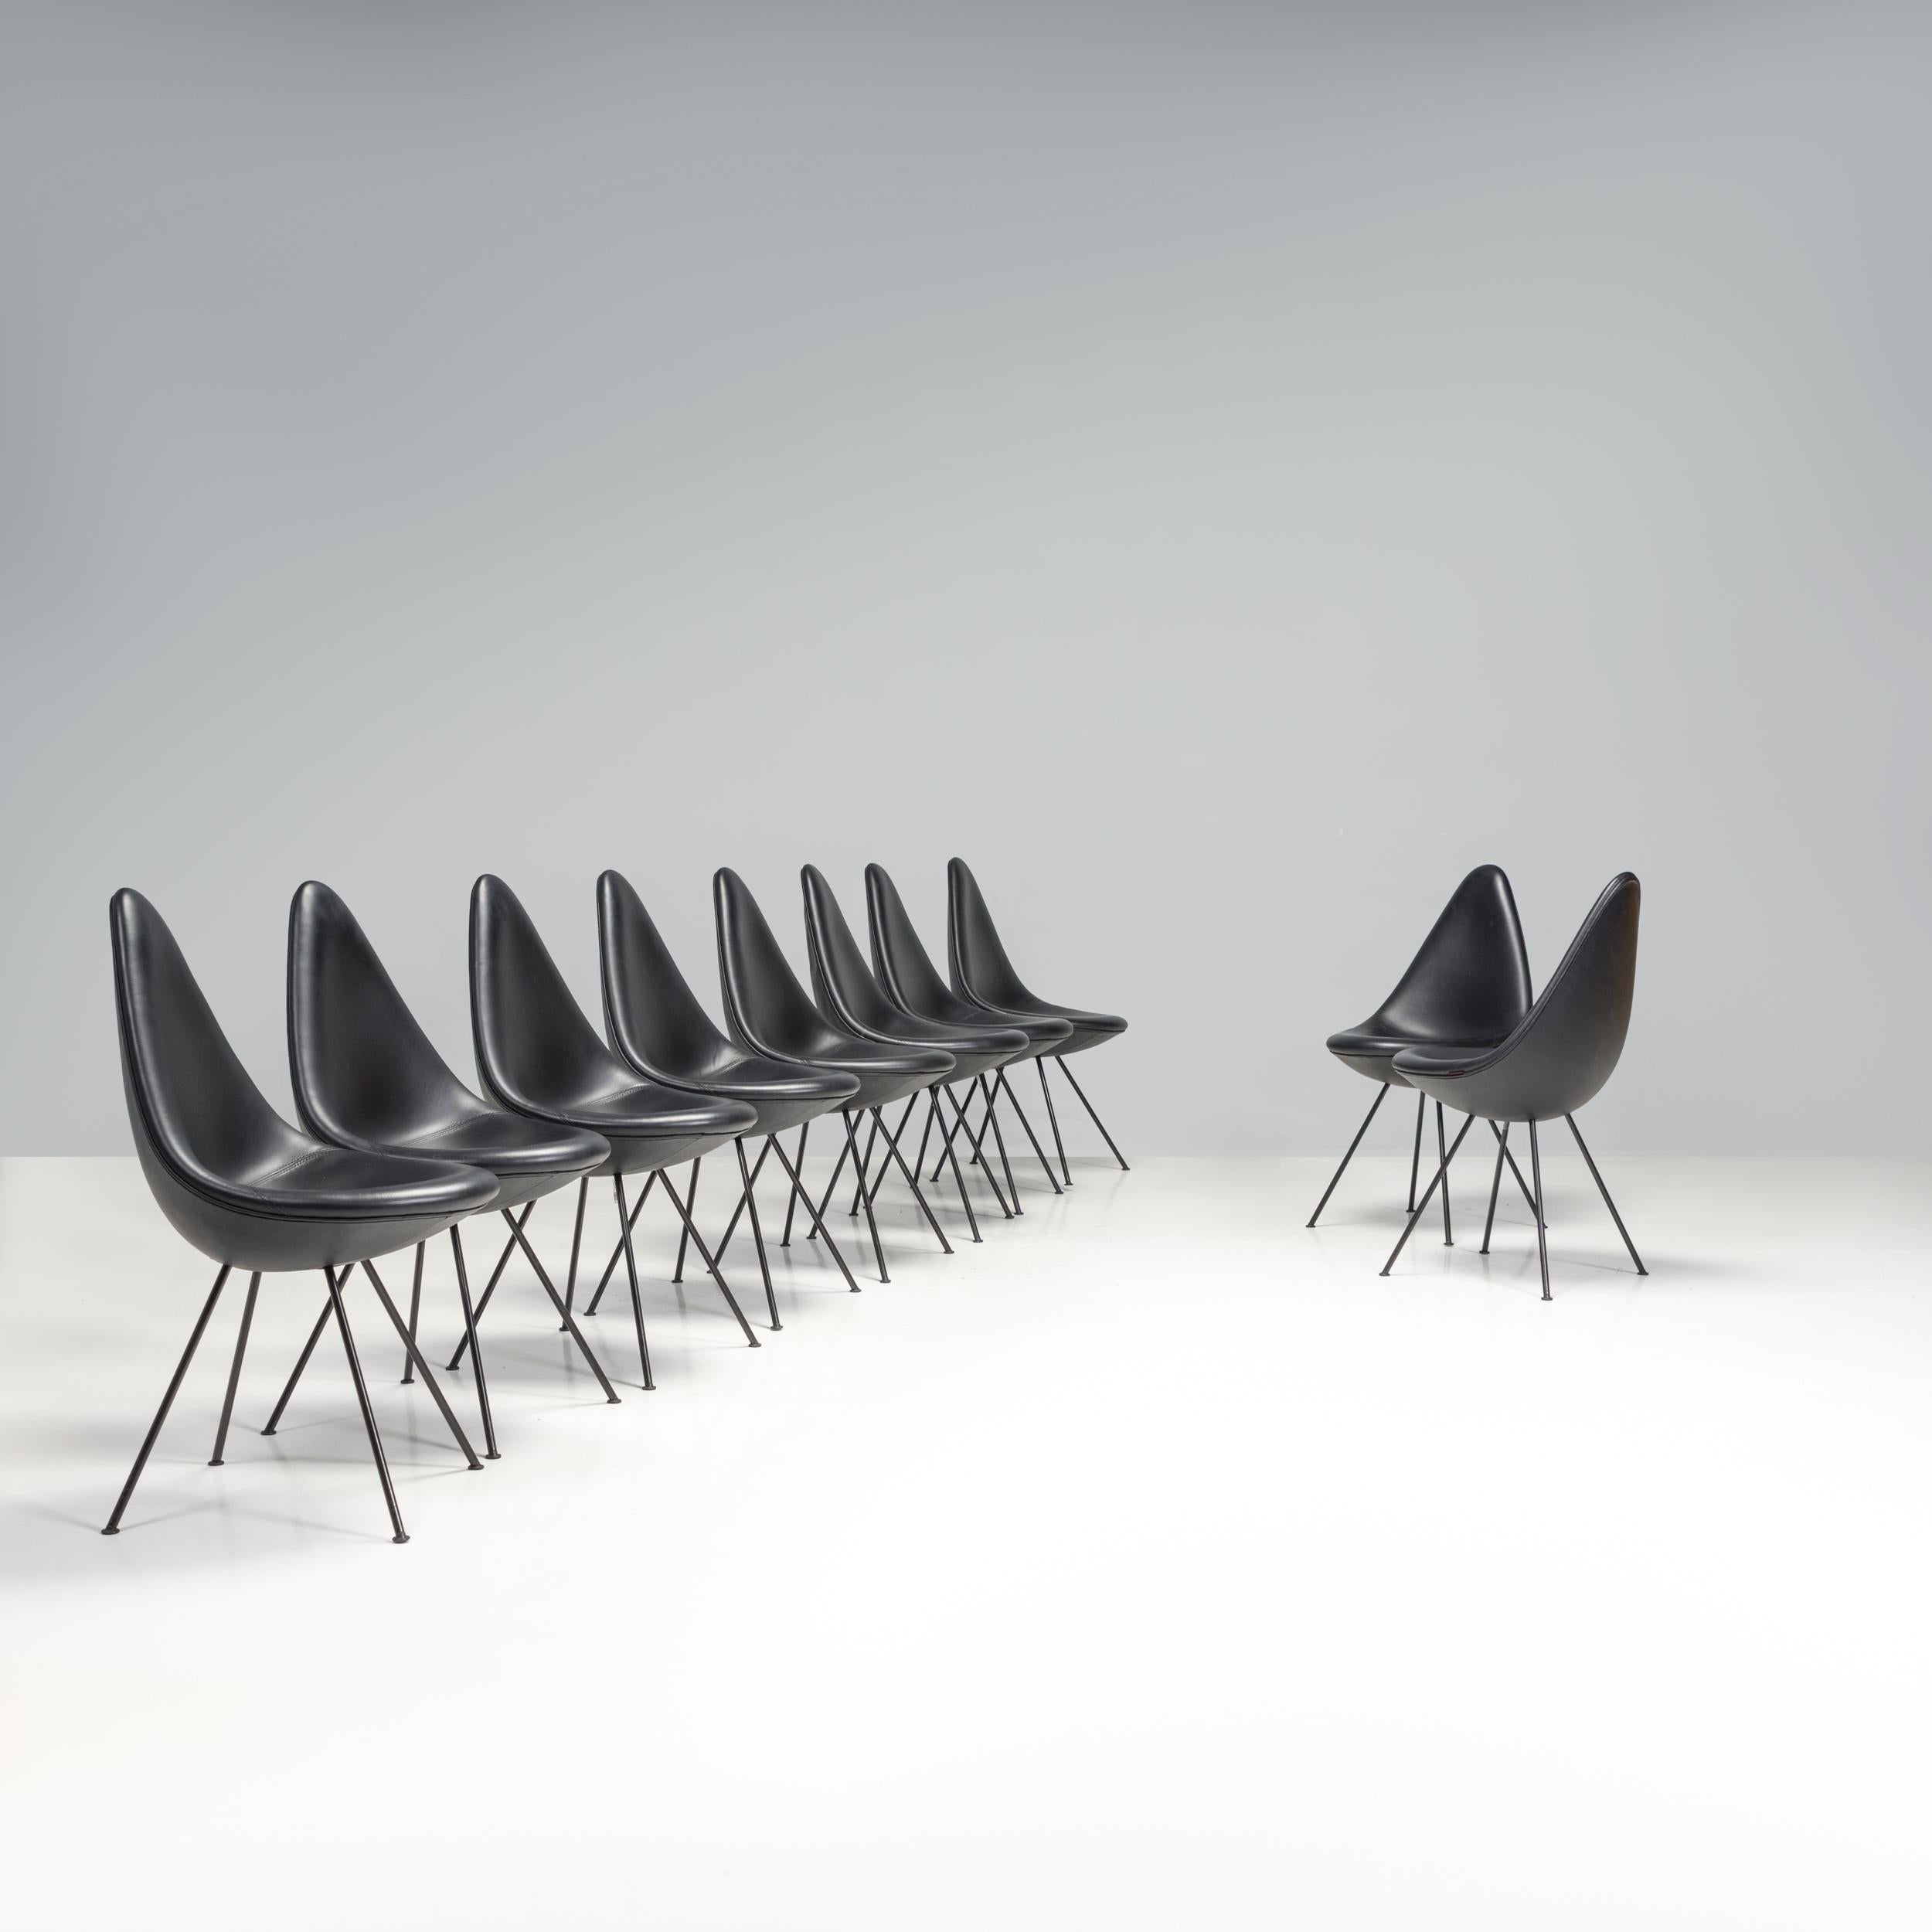 Initialement conçue par Arne Jacobsen en 1958 pour l'hôtel SAS Royal de Copenhague, la chaise drop a été relancée par Fritz Hansen en 2014. Trueing est la chaise préférée de Jacobsen et elle est devenue un véritable classique du design.

Constituée